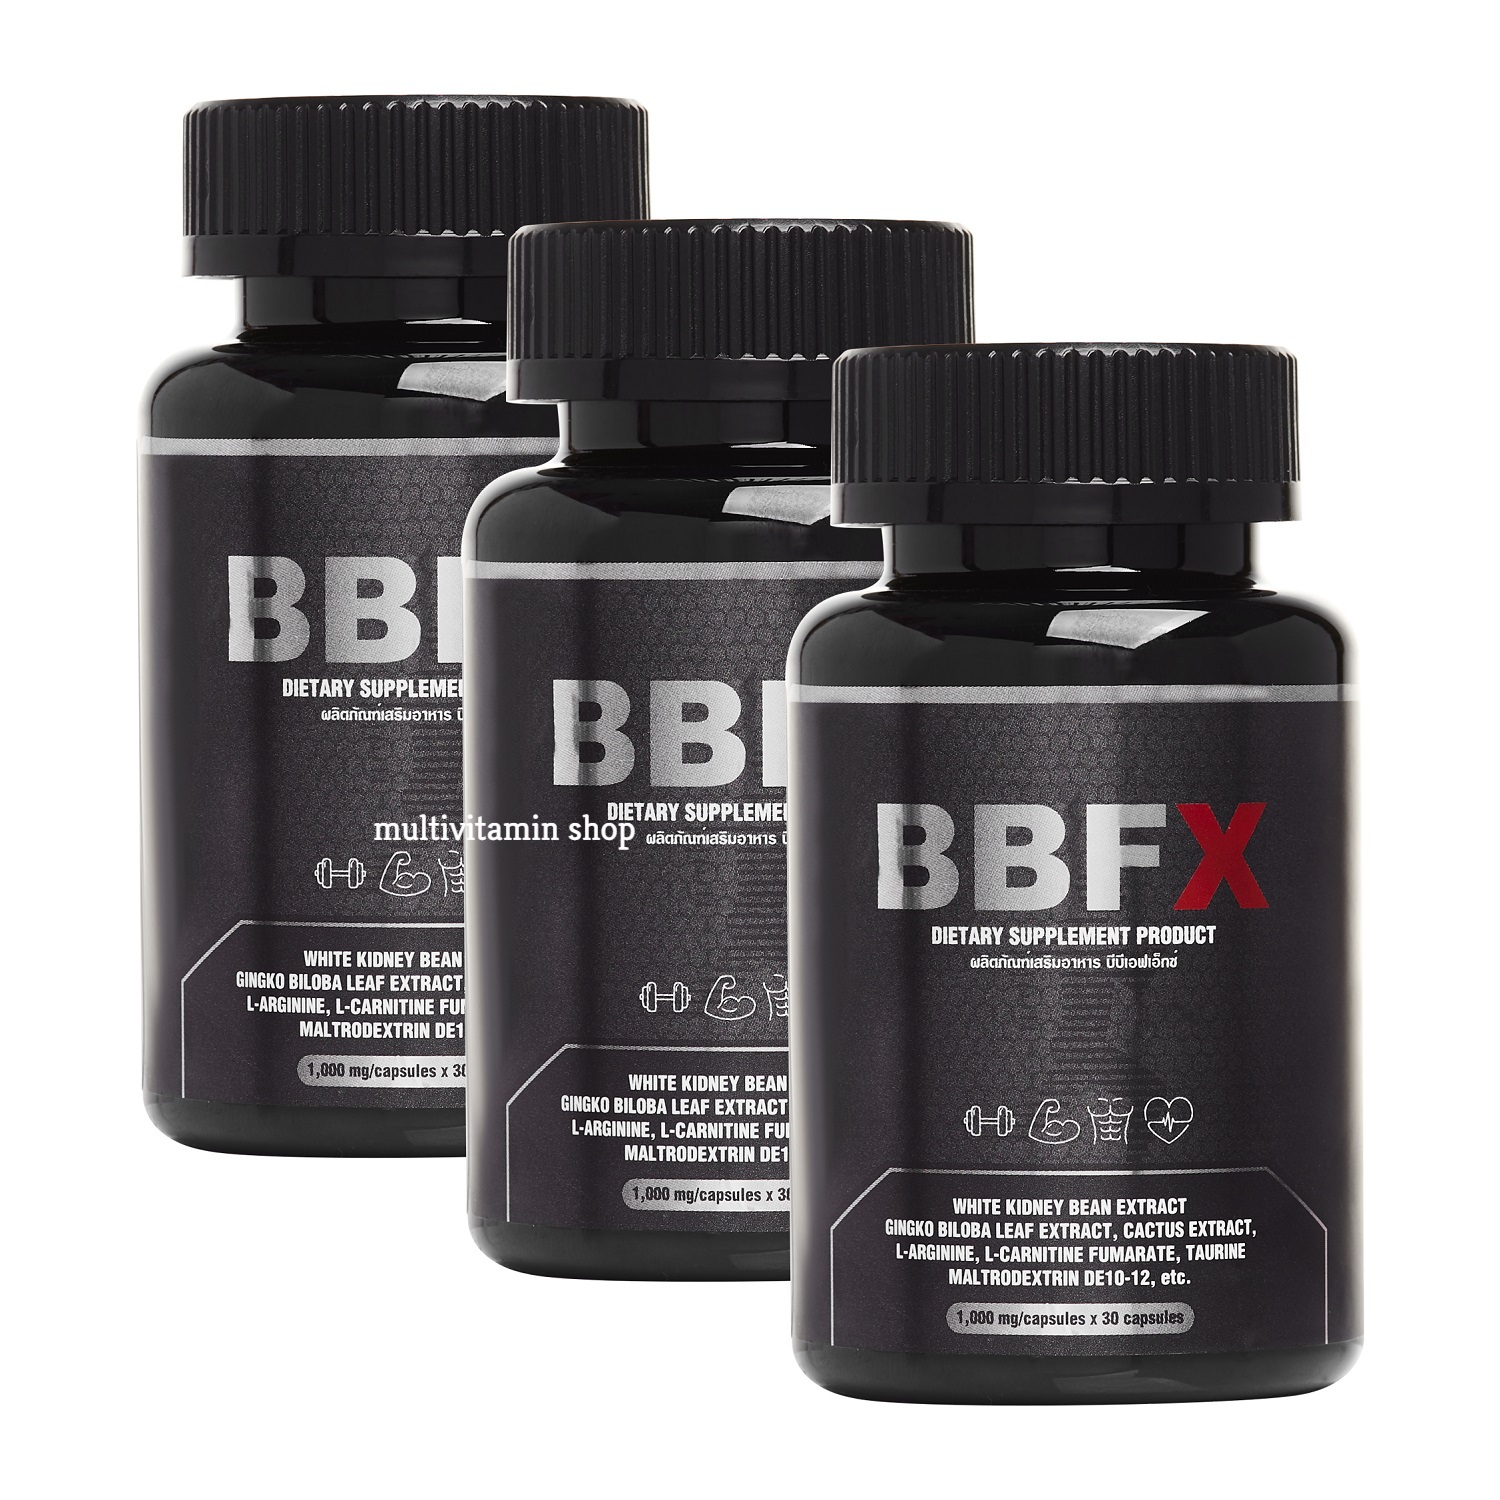 BBFX อาหารเสริมเผาผลาญไขมัน อาหารเสริมเร่งเผาผลาญไขมัน อาหารเสริมช่วยเผาผลาญ อาหารเสริมเบิร์นไขมัน วิตามินเผาผลาญไขมัน 3 กระปุก